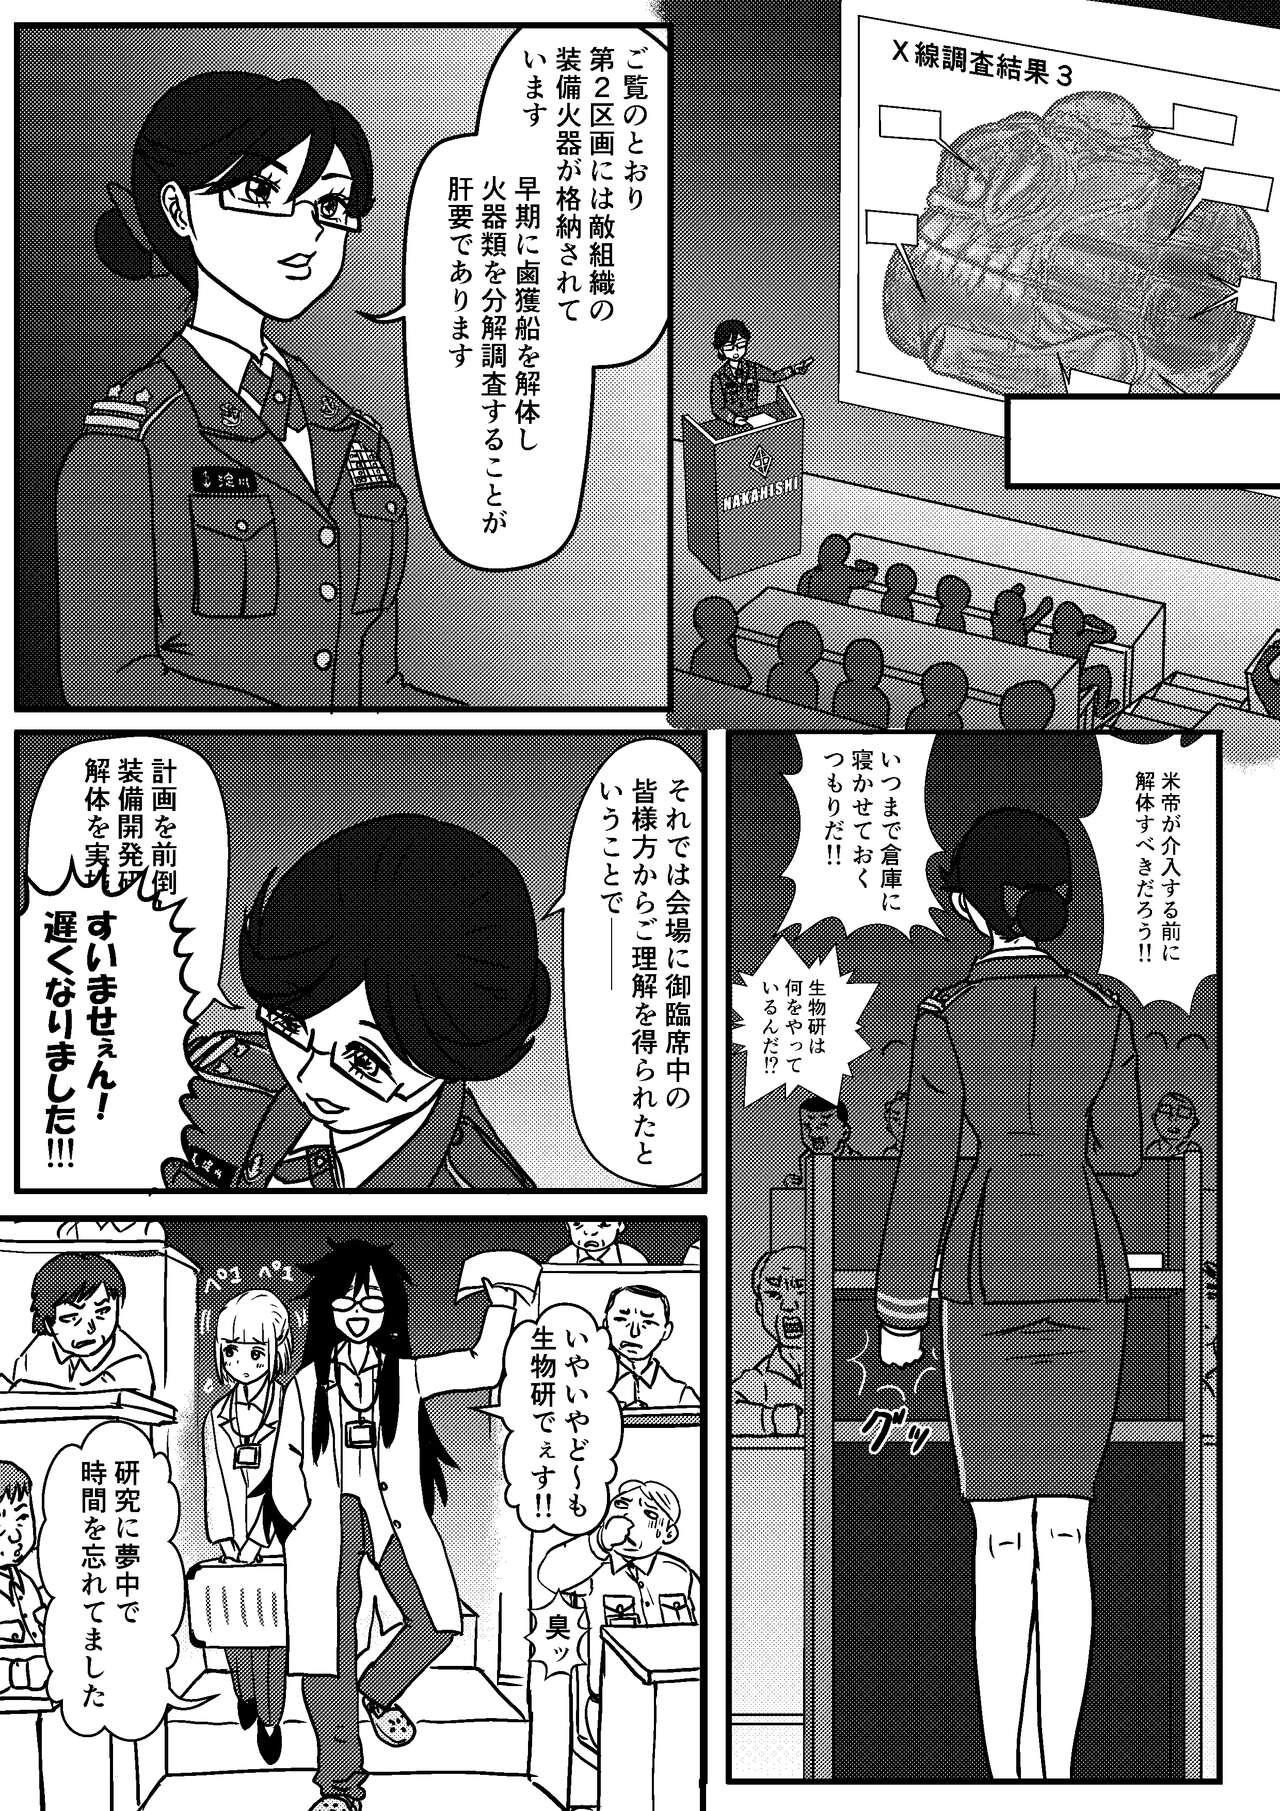 Girlsfucking Josei Teitoku no Miru Yume wa… Rei #2 - Kantai collection Lesbians - Page 5